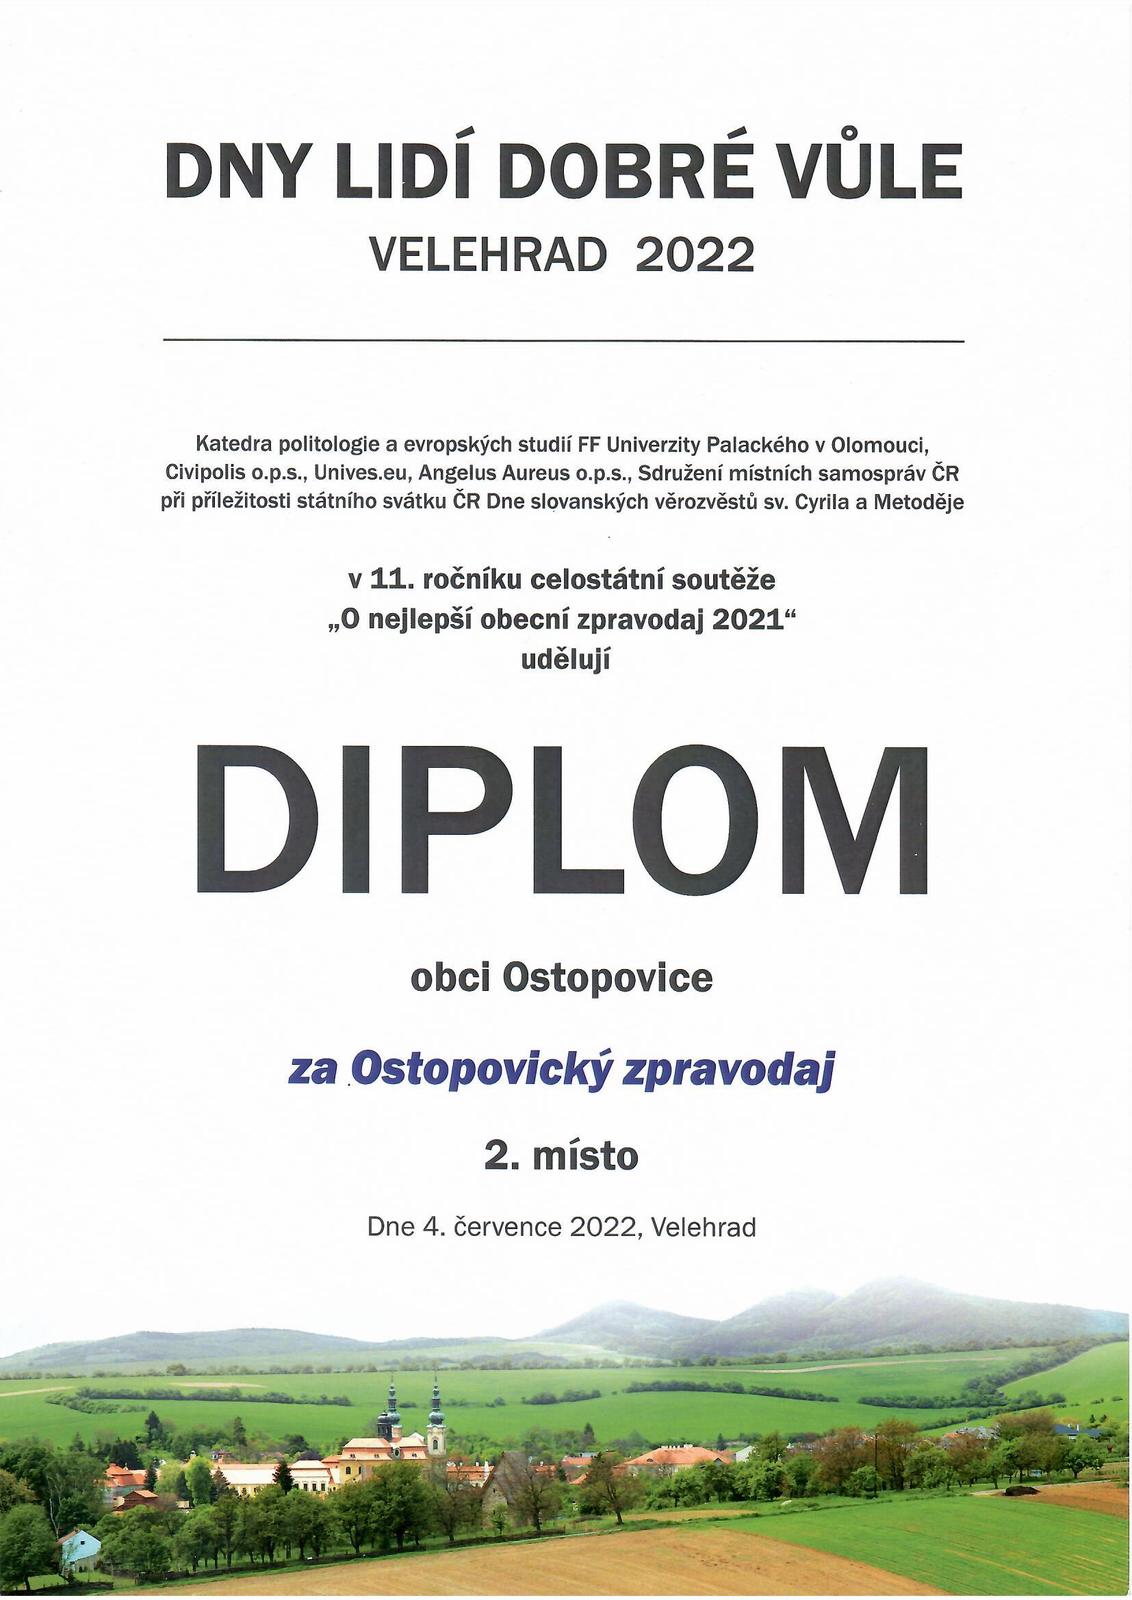 Diplom_zpravodaj_2022.jpg